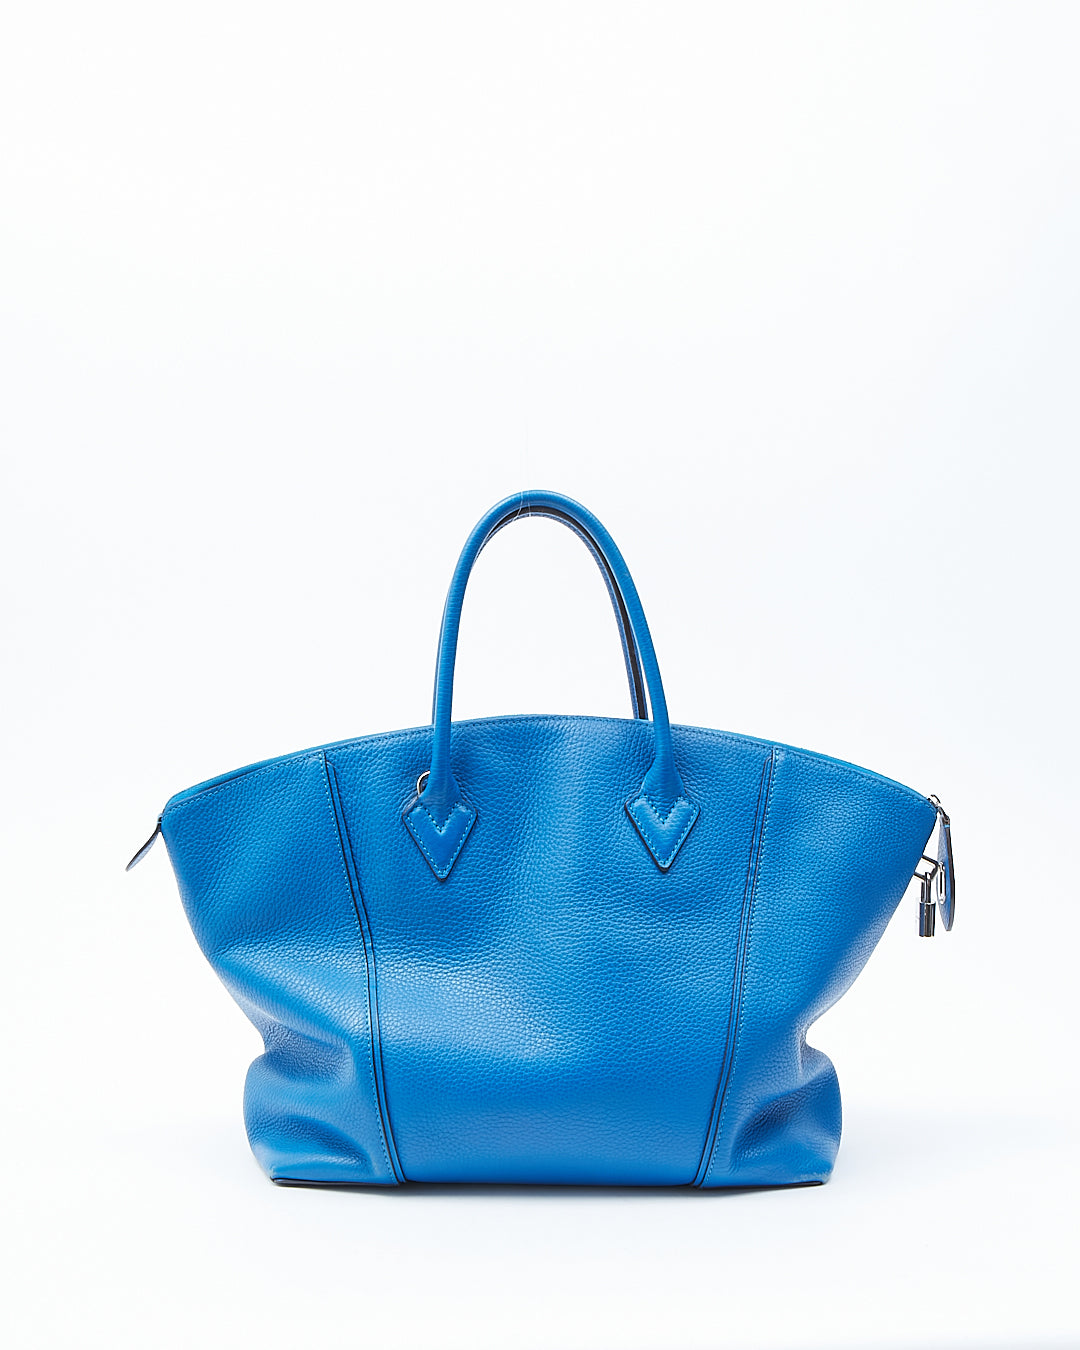 Sac Louis Vuitton Soft Lockit MM en cuir Taurillon bleu royal